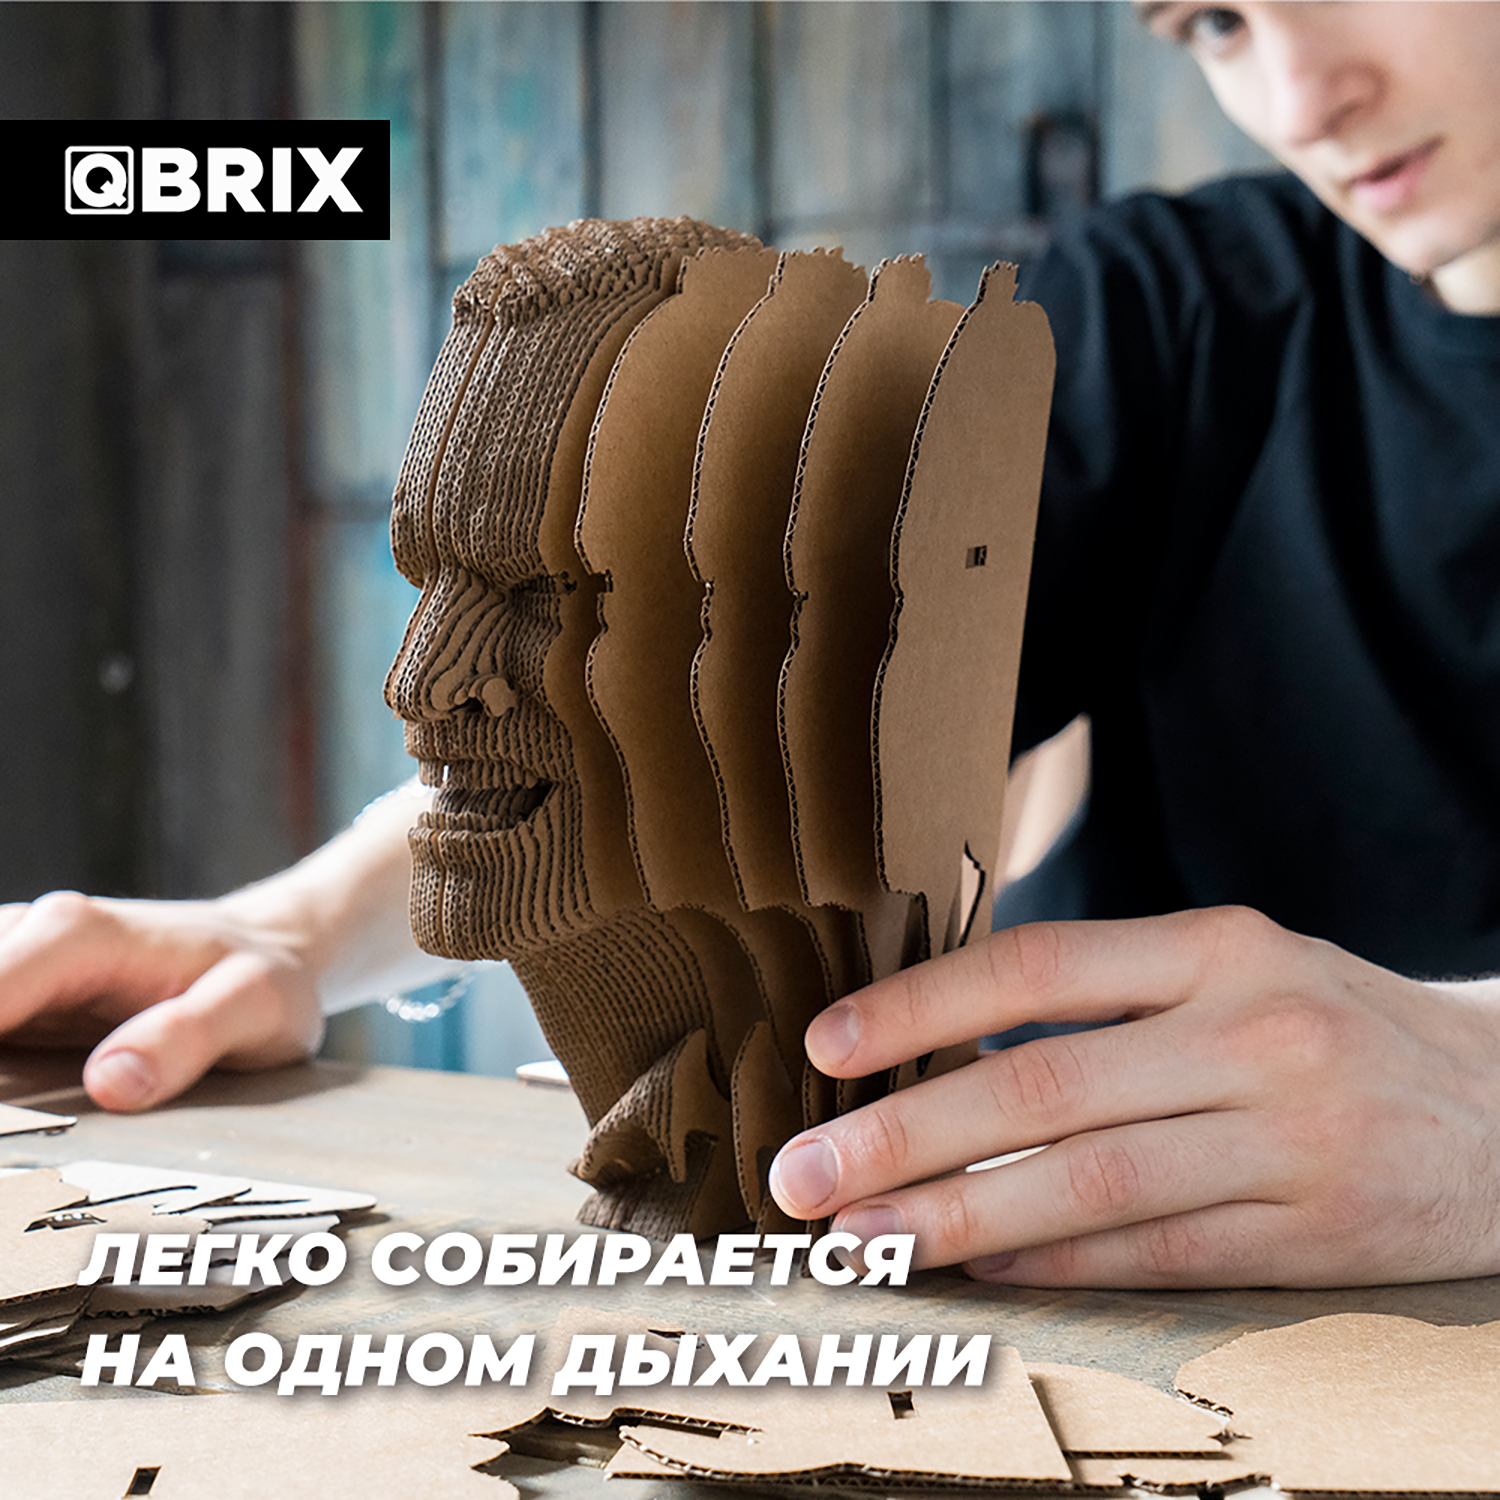 Конструктор QBRIX 3D картонный Книжный Маньяк 20006 20006 - фото 9